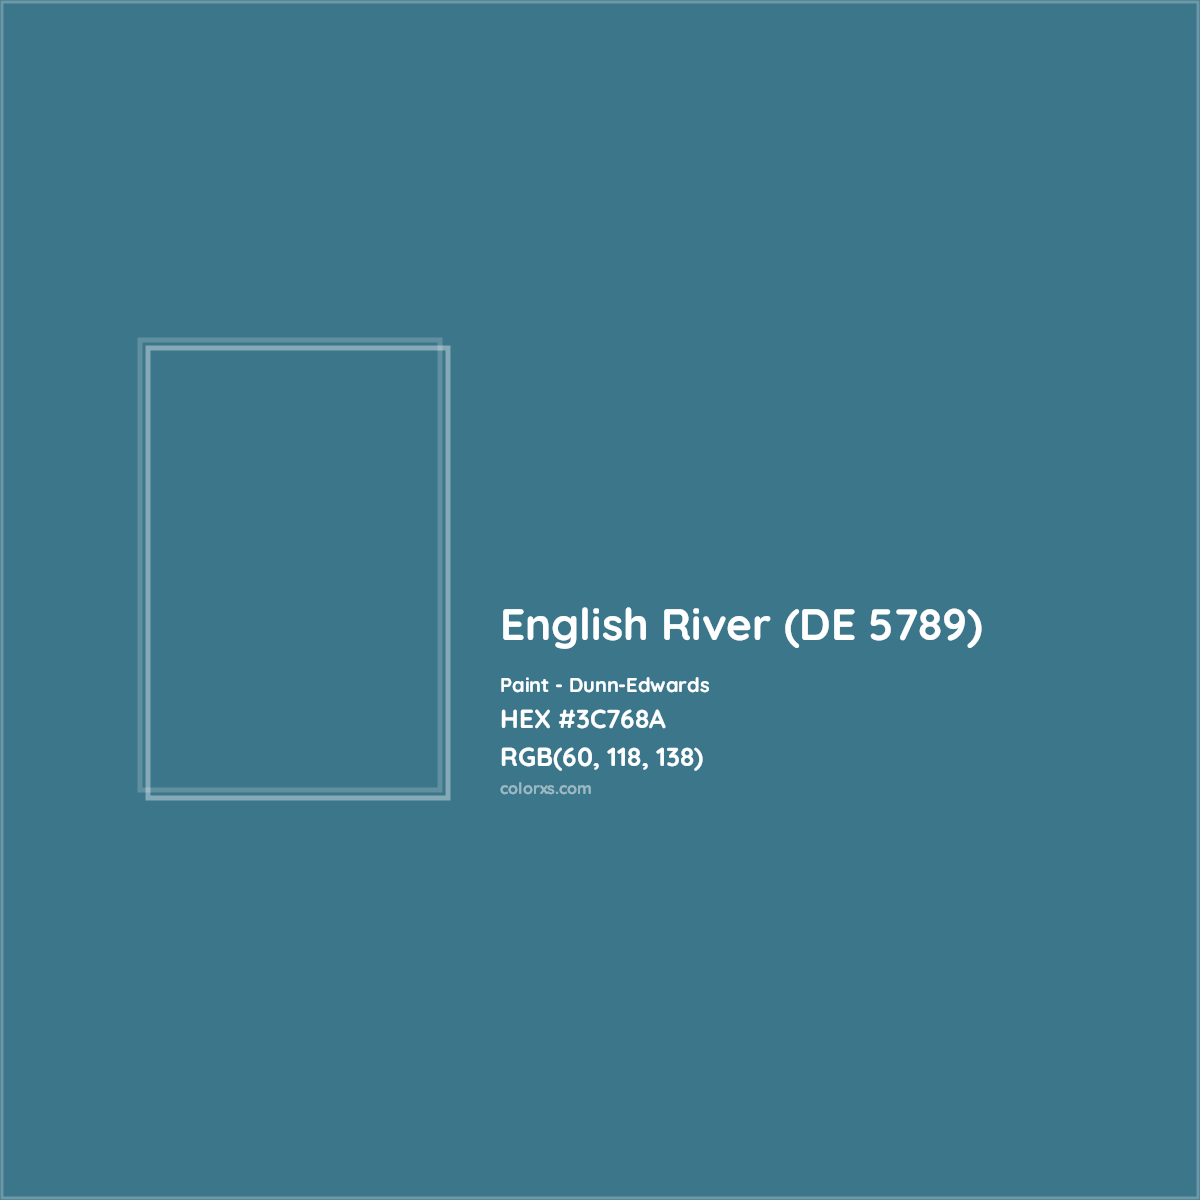 HEX #3C768A English River (DE 5789) Paint Dunn-Edwards - Color Code